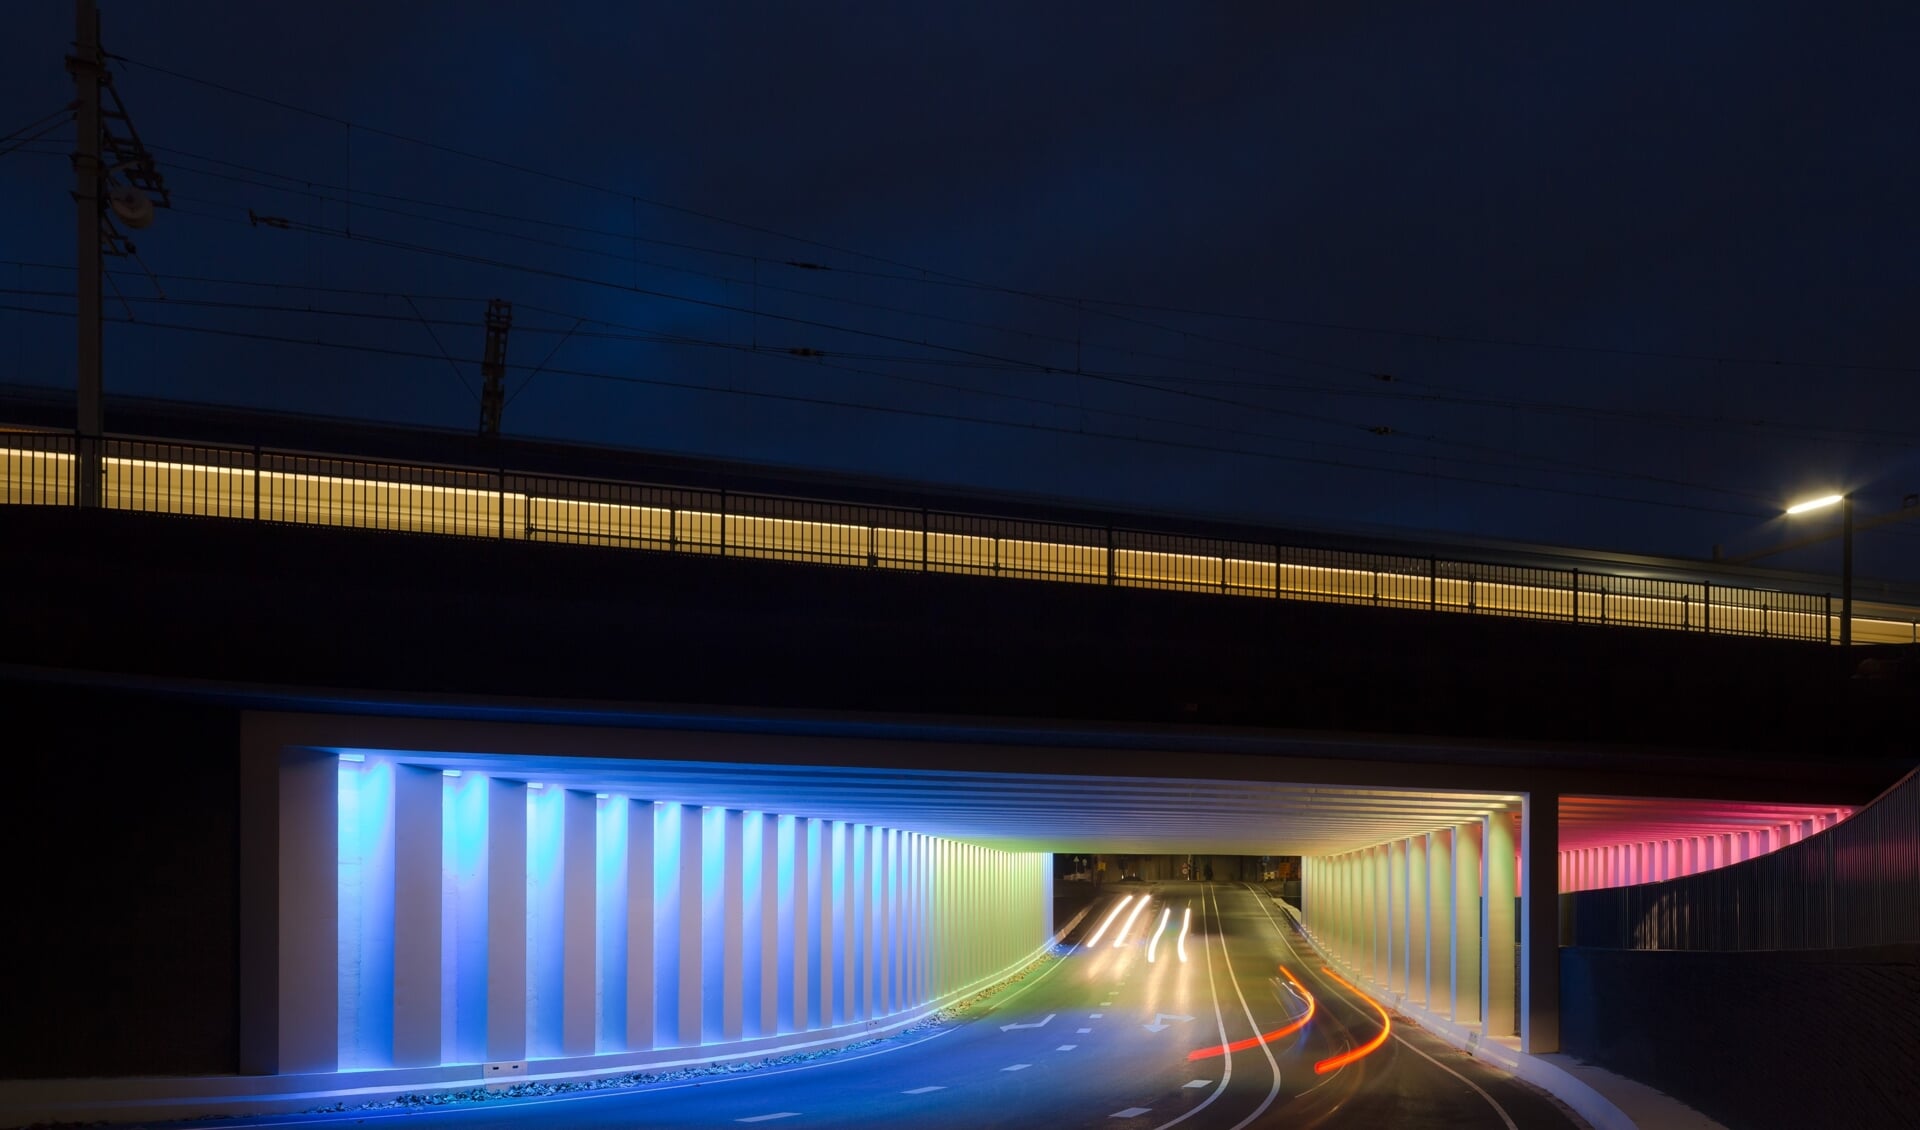 Elke lichtbron in de Marstunnel is individueel aanstuurbaar. Hiermee worden constant wisselende kleurbeelden gecreëerd. Foto: Jannes Linders